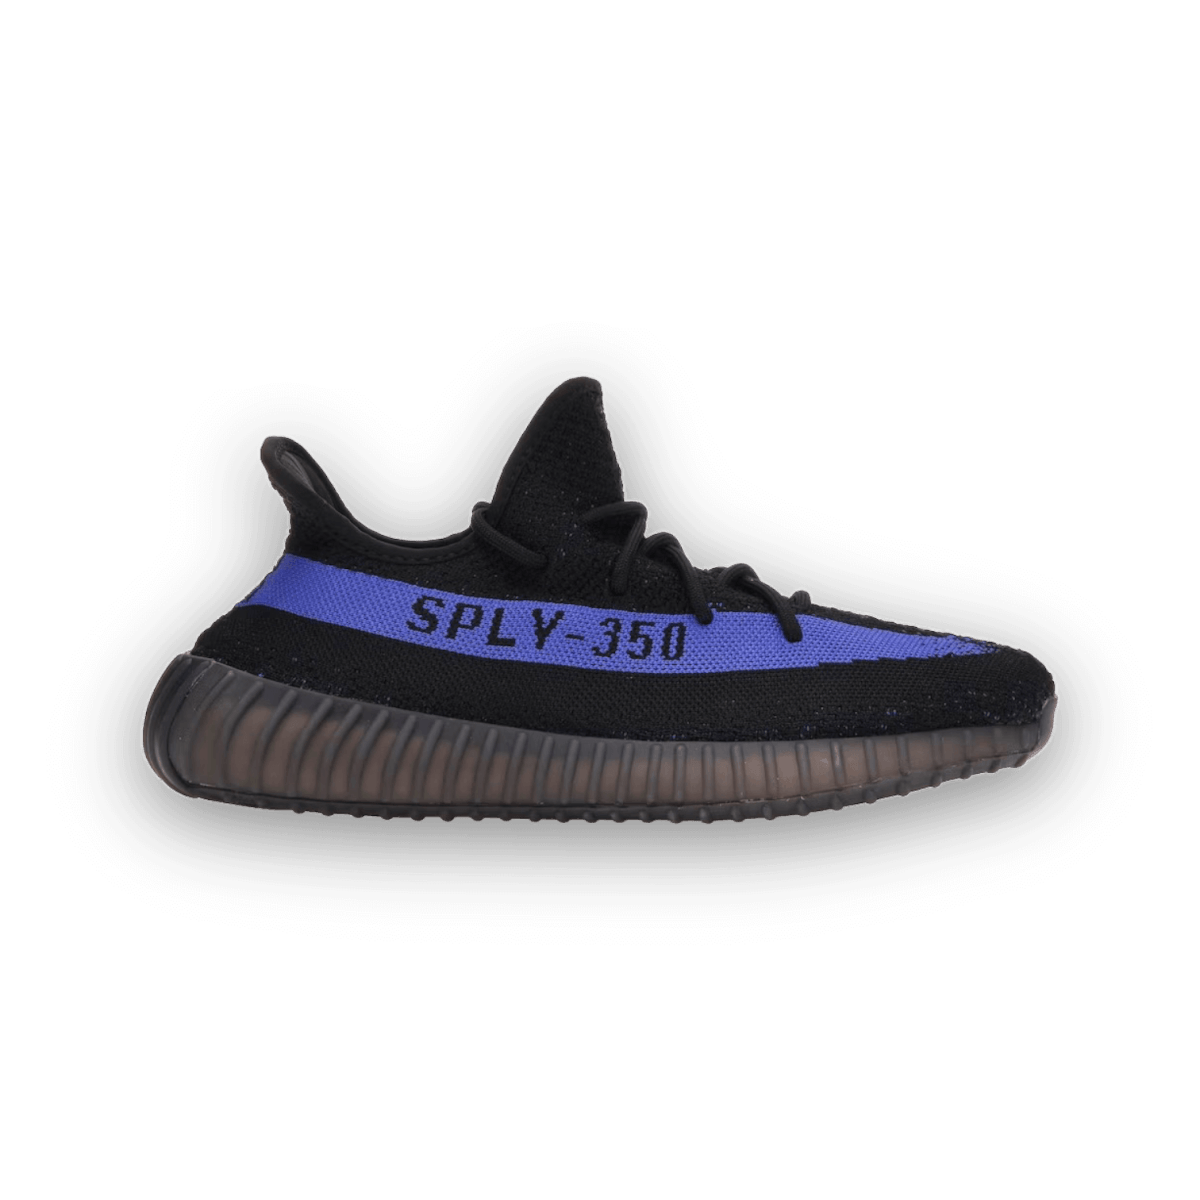 Yeezy Boost 350 V2 Dazzling Blue - sneaker - Low Sneaker - Yeezy - Jawns on Fire